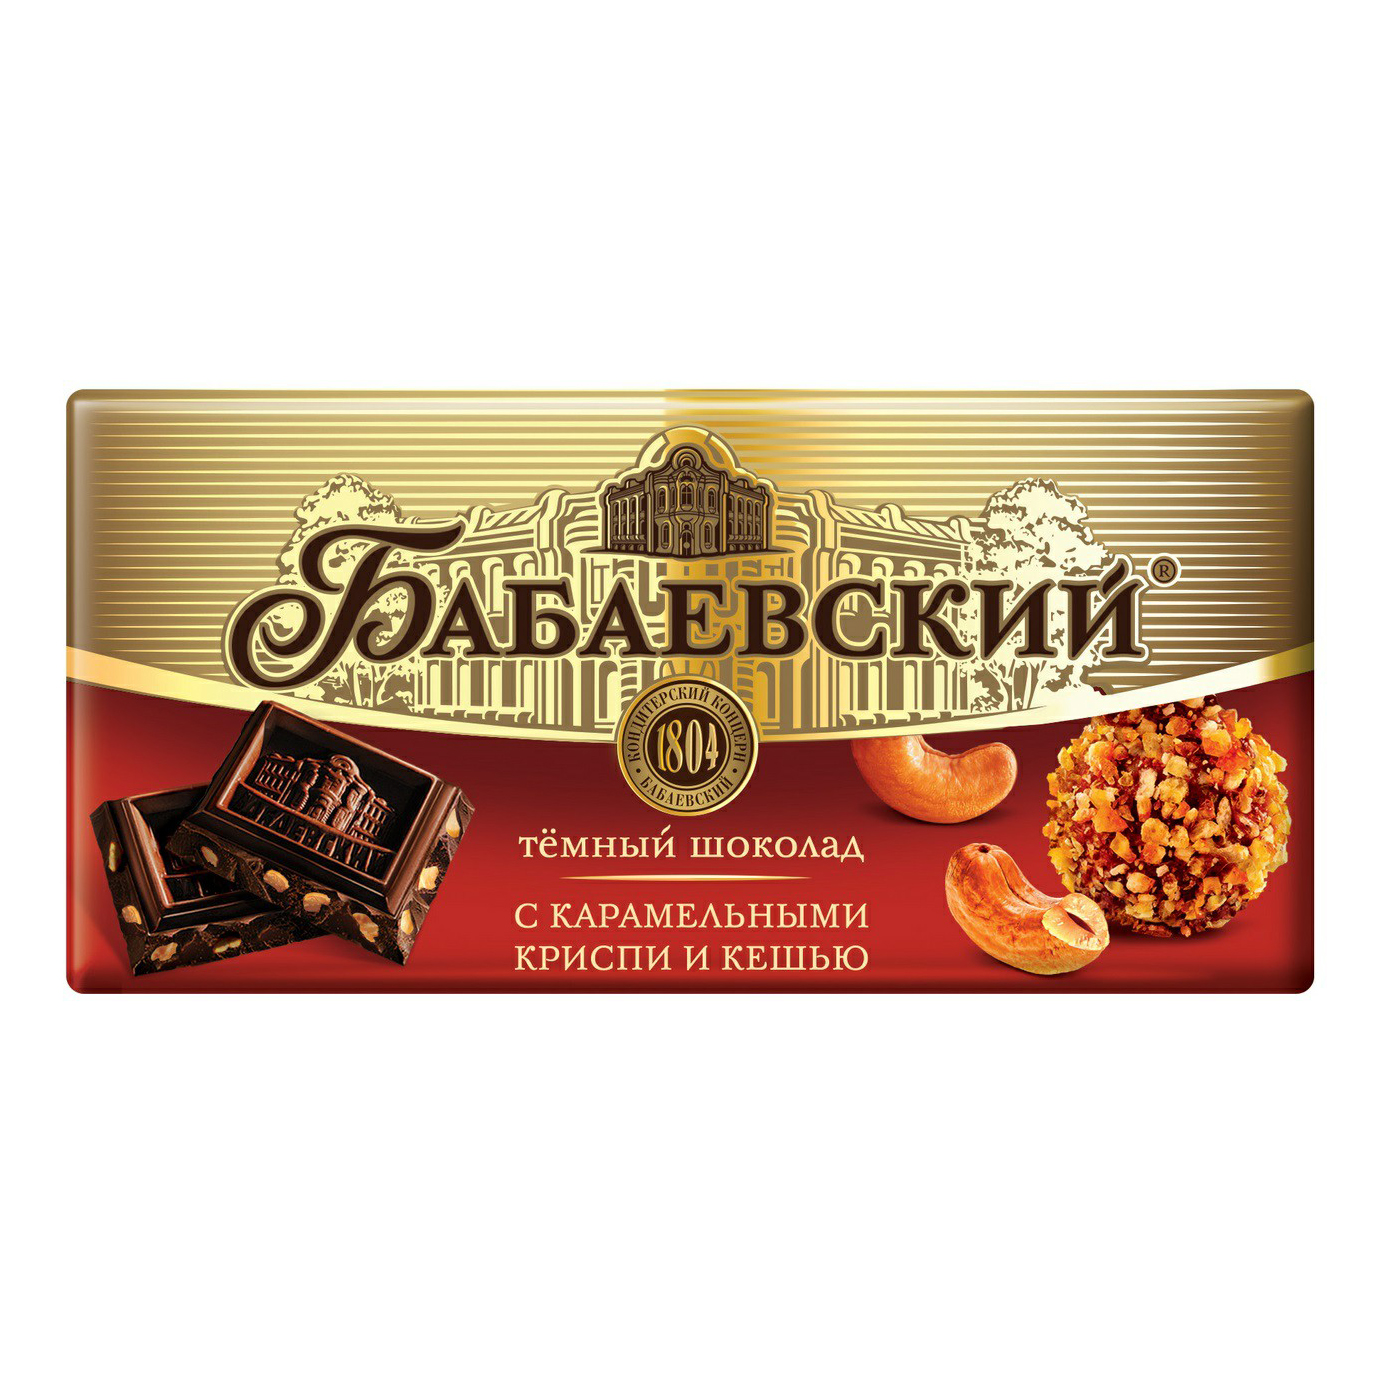 Шоколад Бабаевский темный с карамельными криспи и кешью 90 г